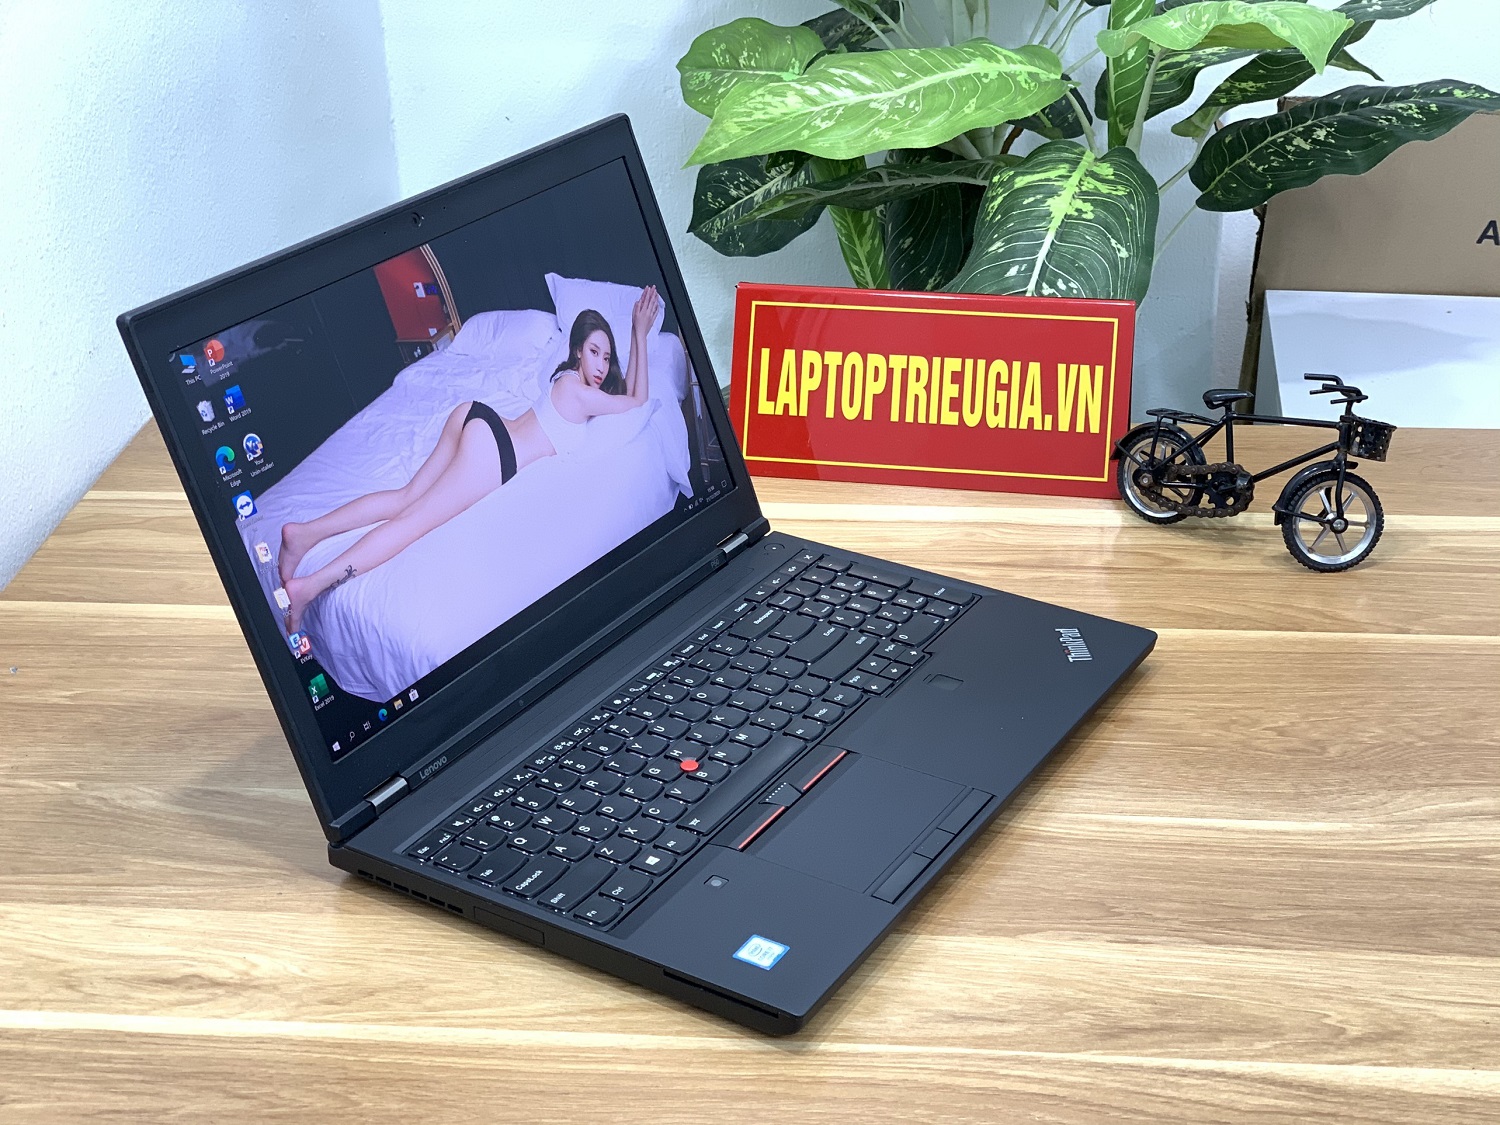 Laptop Lenovo ThinkPad P50 i7-6820HQ| RAM 16GB| SSD 512GB| Quadro M1000M | 15.6 FHD